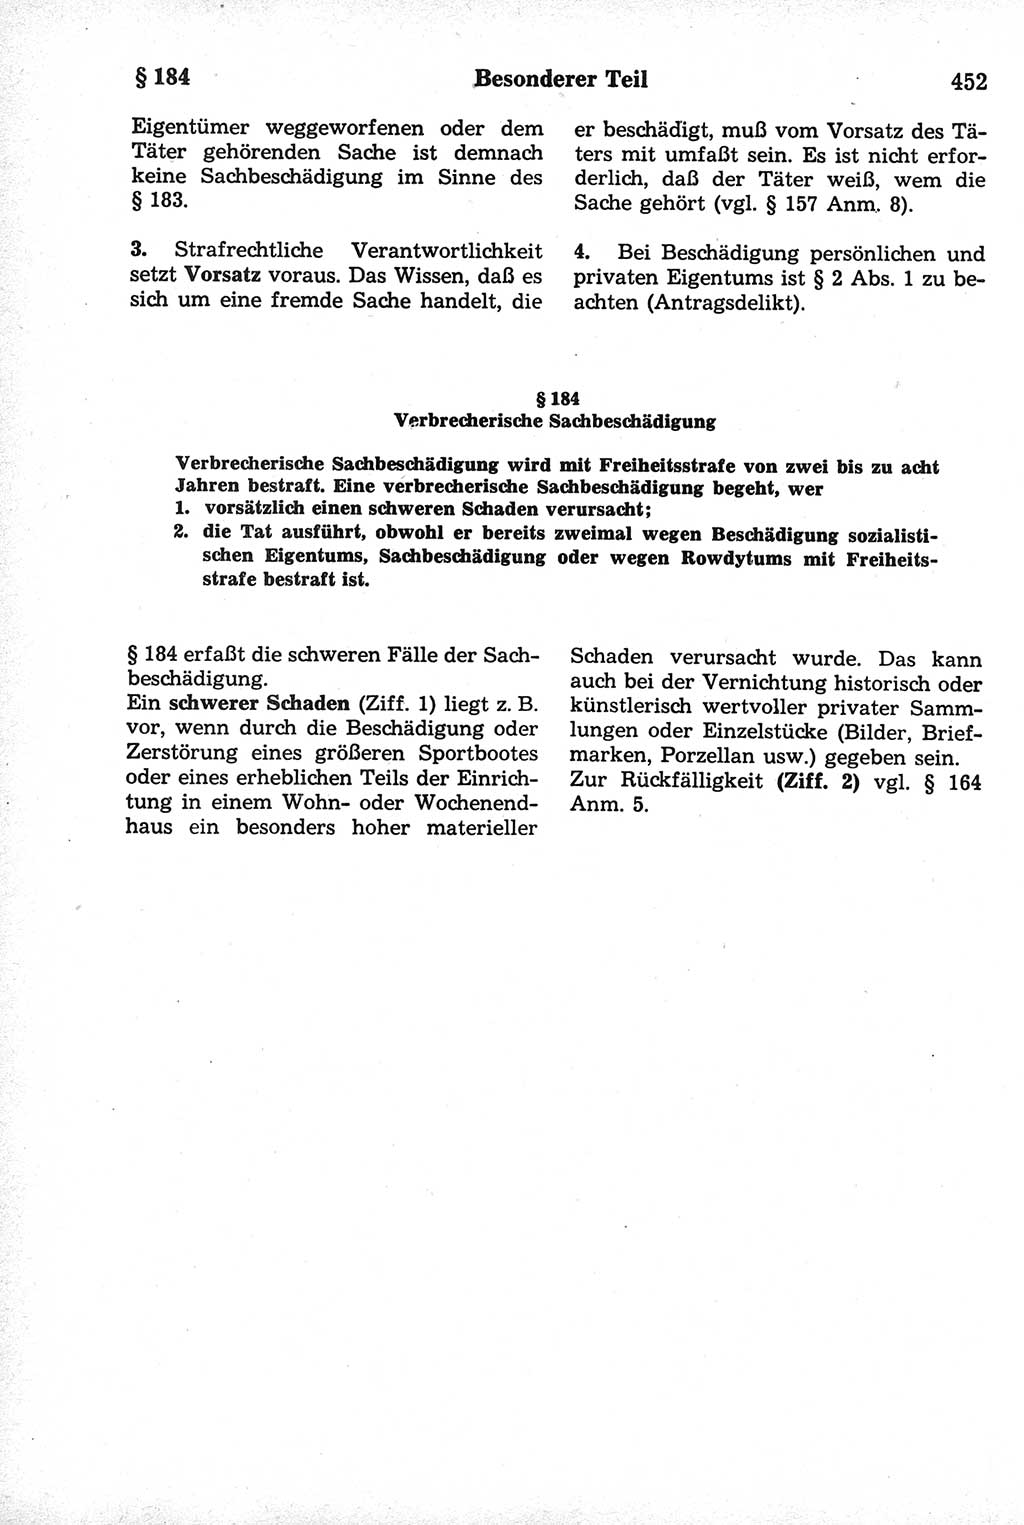 Strafrecht der Deutschen Demokratischen Republik (DDR), Kommentar zum Strafgesetzbuch (StGB) 1981, Seite 452 (Strafr. DDR Komm. StGB 1981, S. 452)